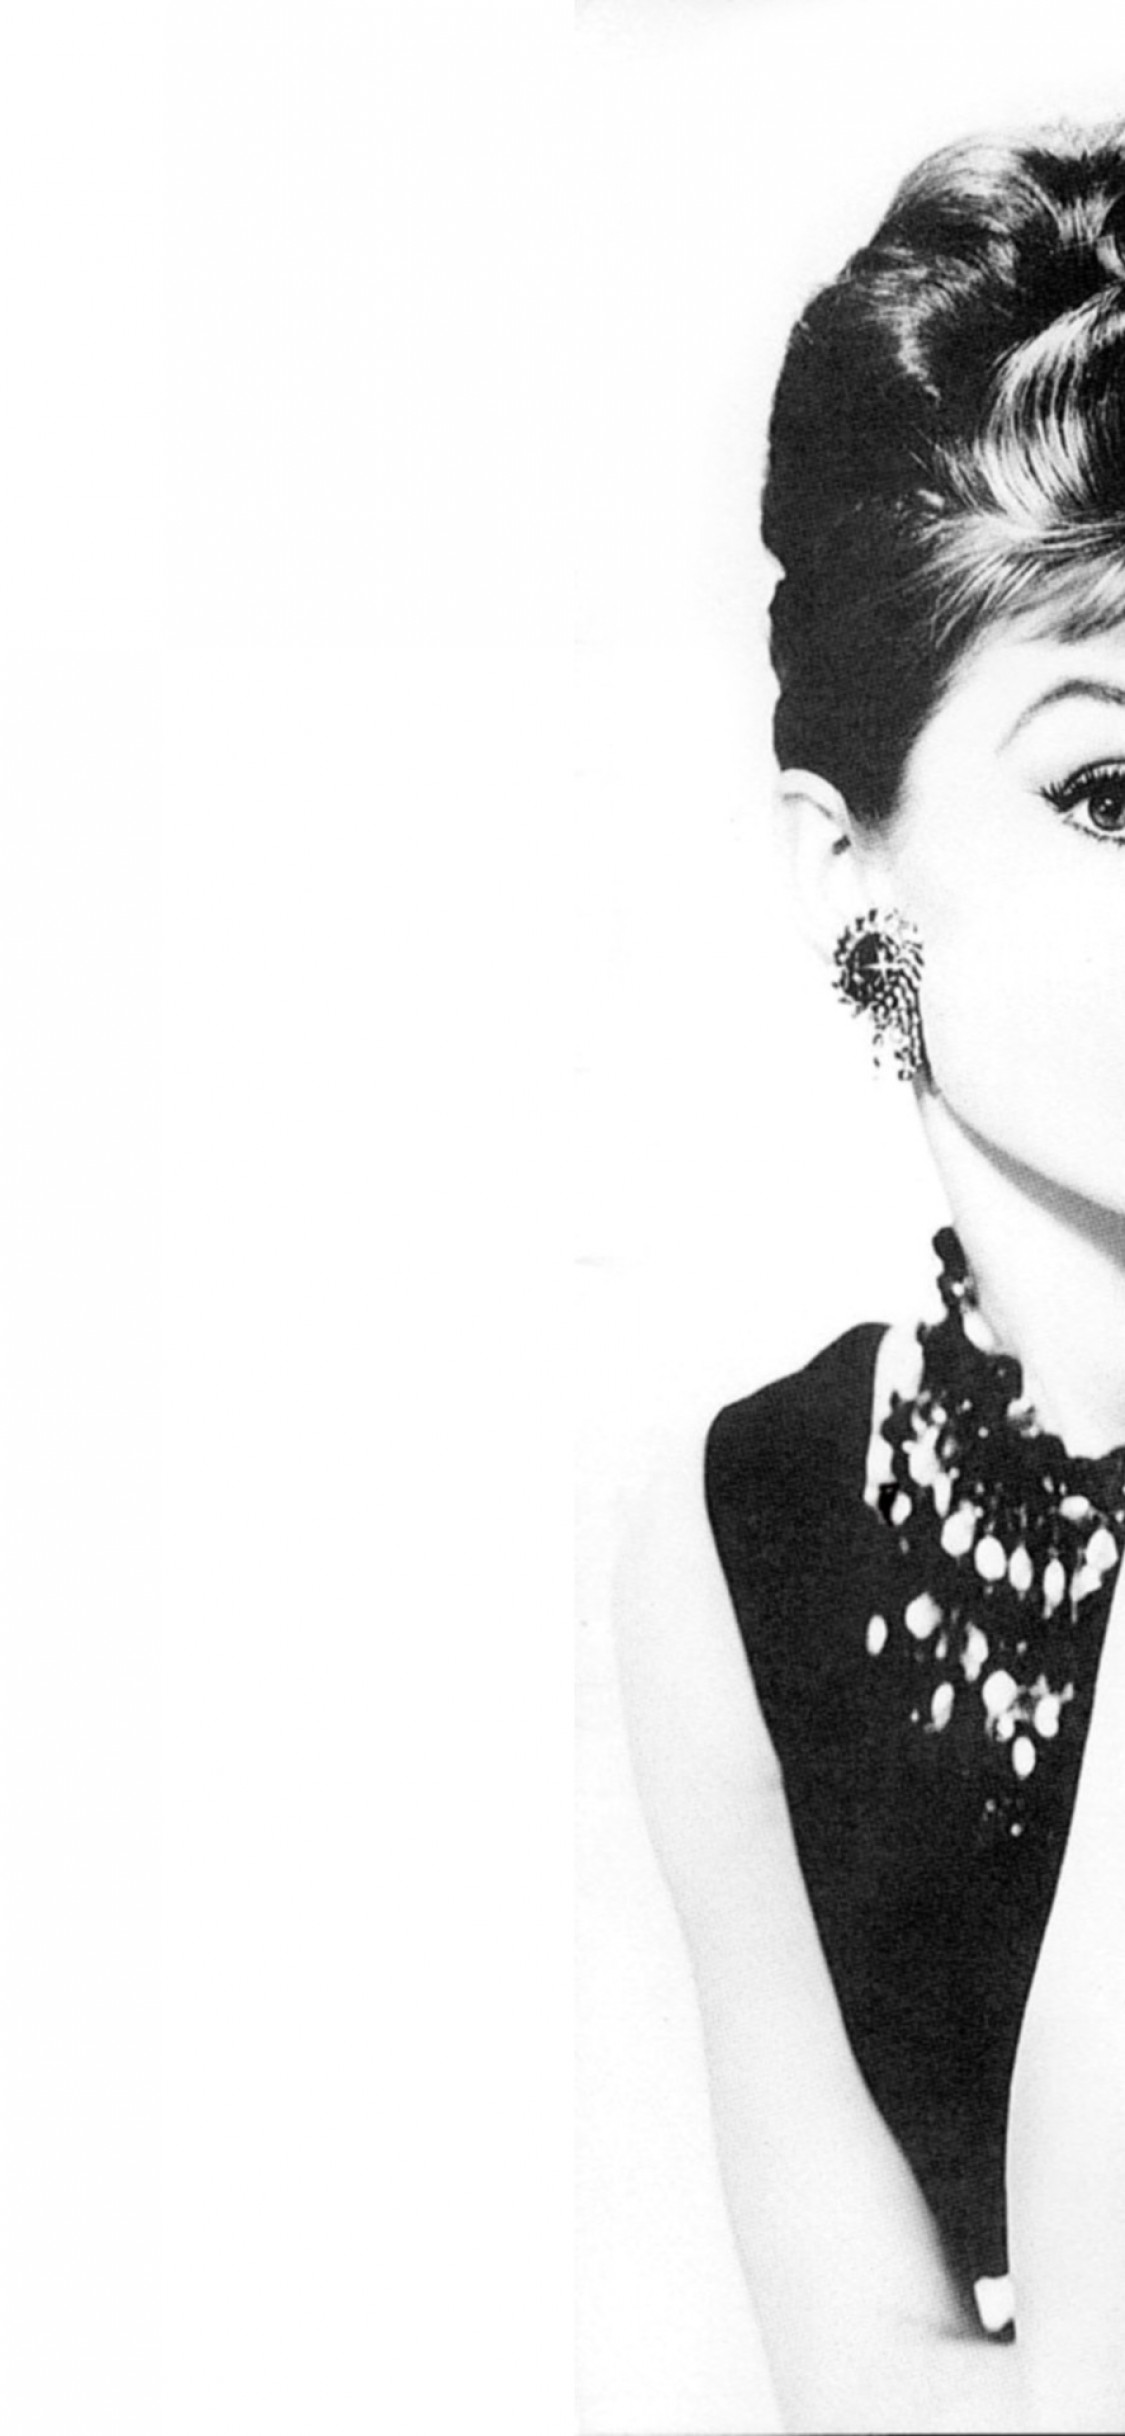 Iphone X Audrey Hepburn Wallpaper - Audrey Hepburn Iphone X , HD Wallpaper & Backgrounds